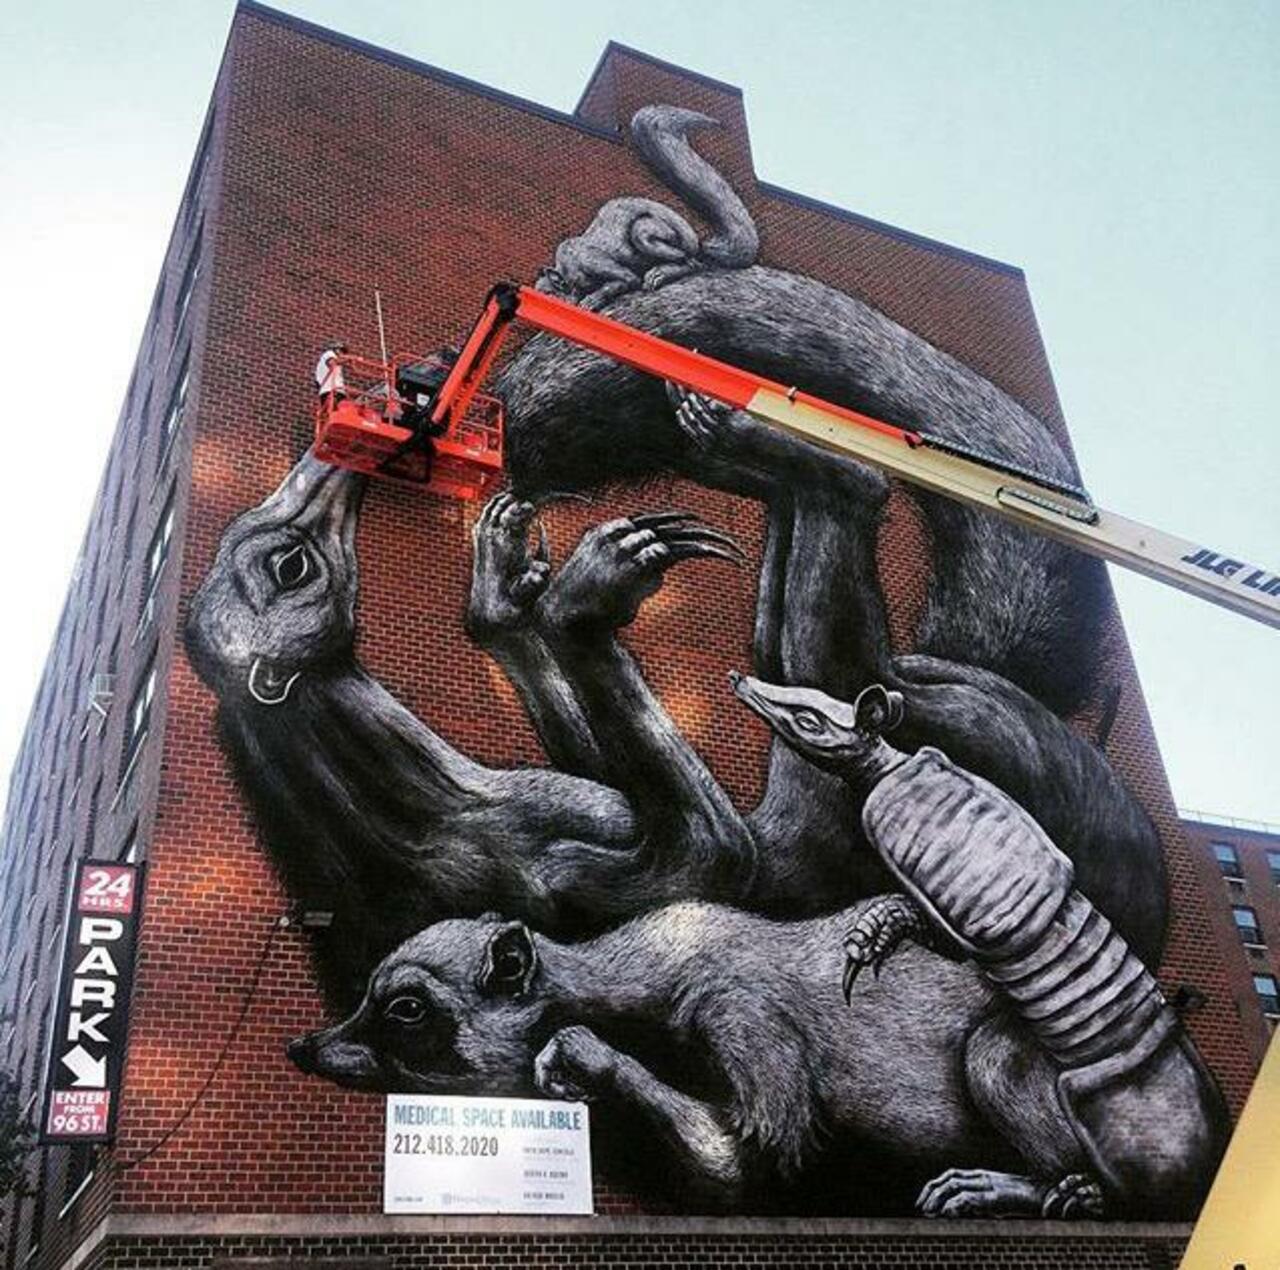 Street Art in progress by ROA in NYC

#art #graffiti #mural #streetart http://t.co/JhzhqGajIE